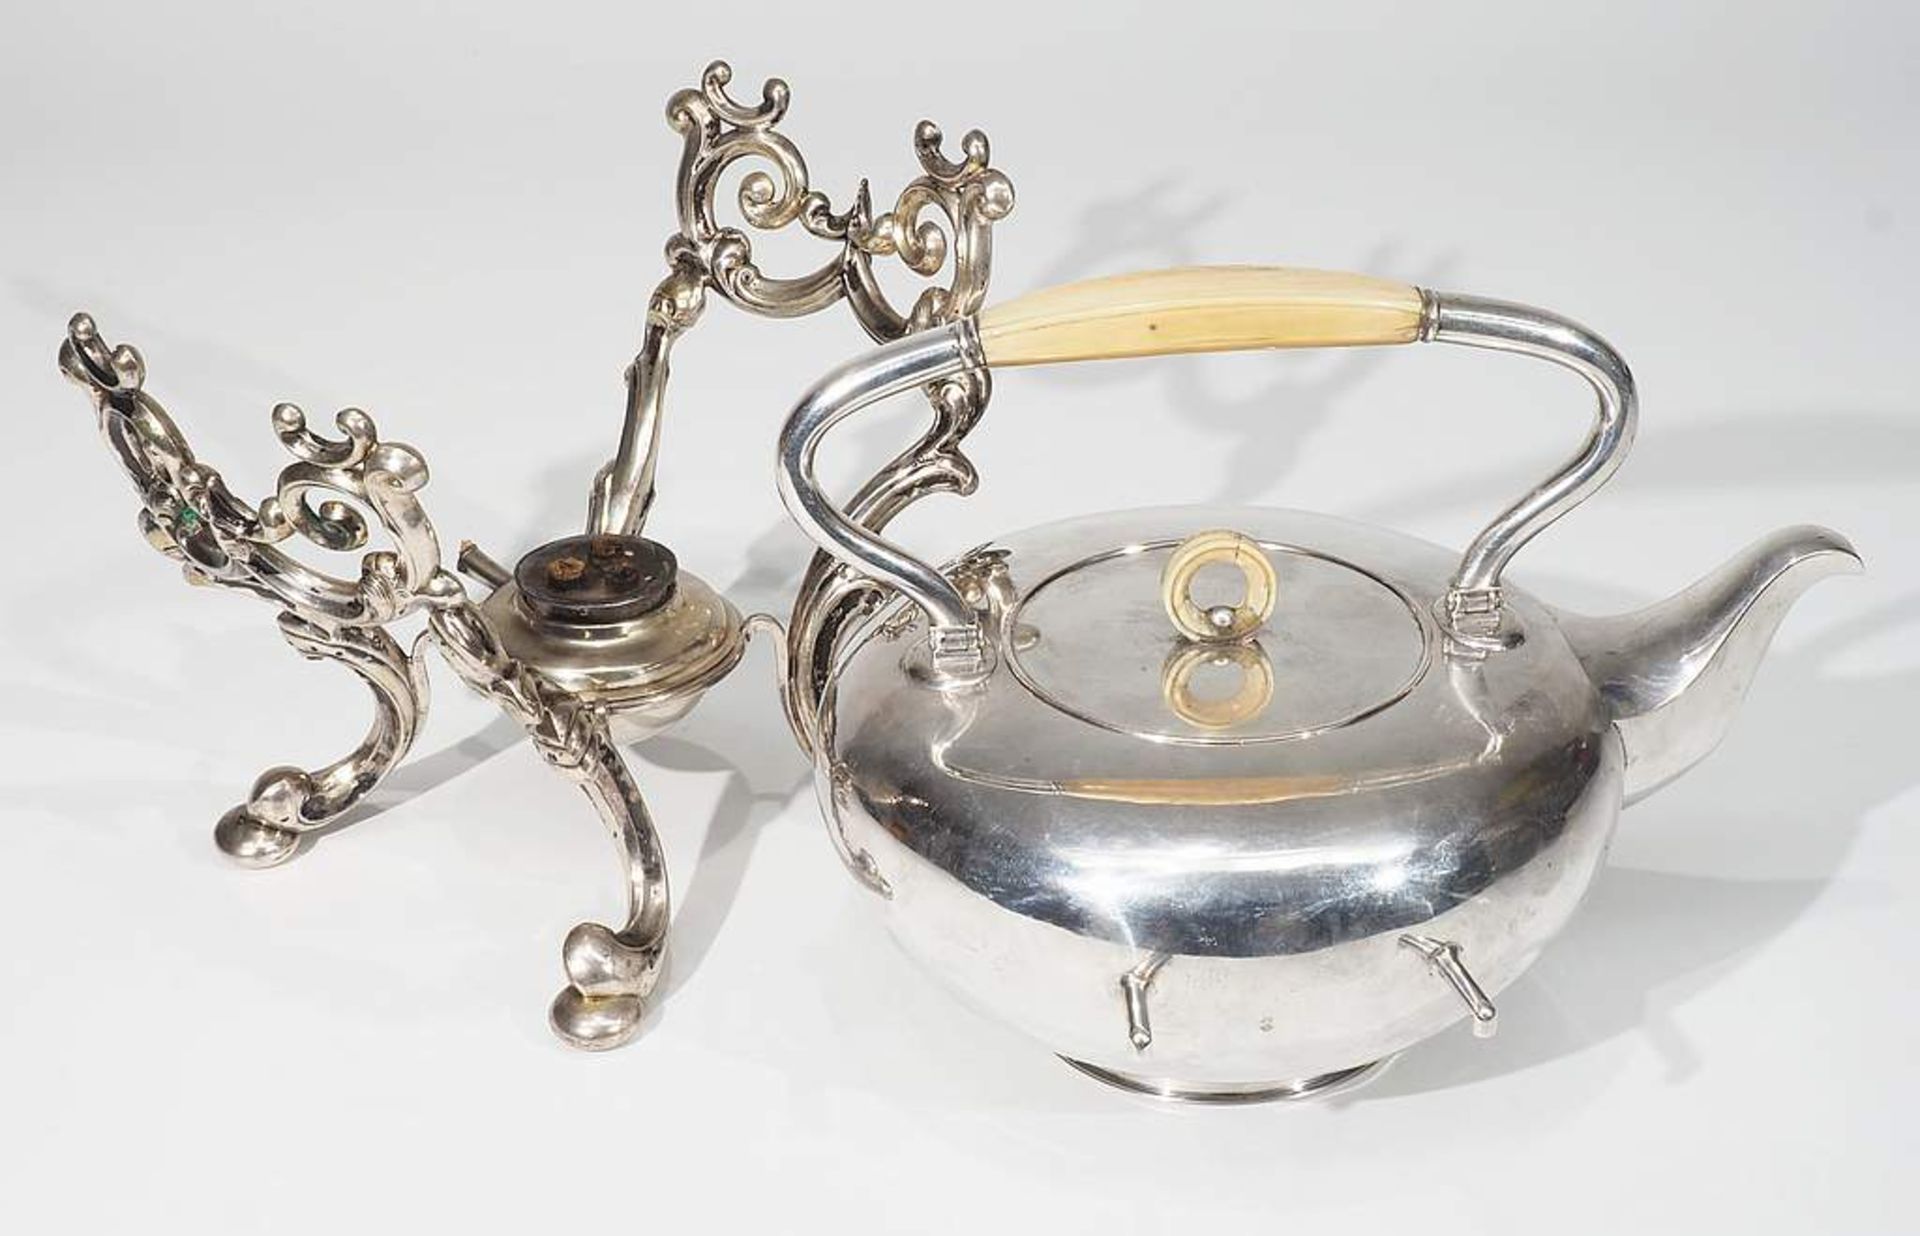 Teekessel auf Rechaud, 12 Lot Silber, um 1800 - etwa 1857, ( = 750er Silber ). Hofjuwelier Haller & - Bild 5 aus 7